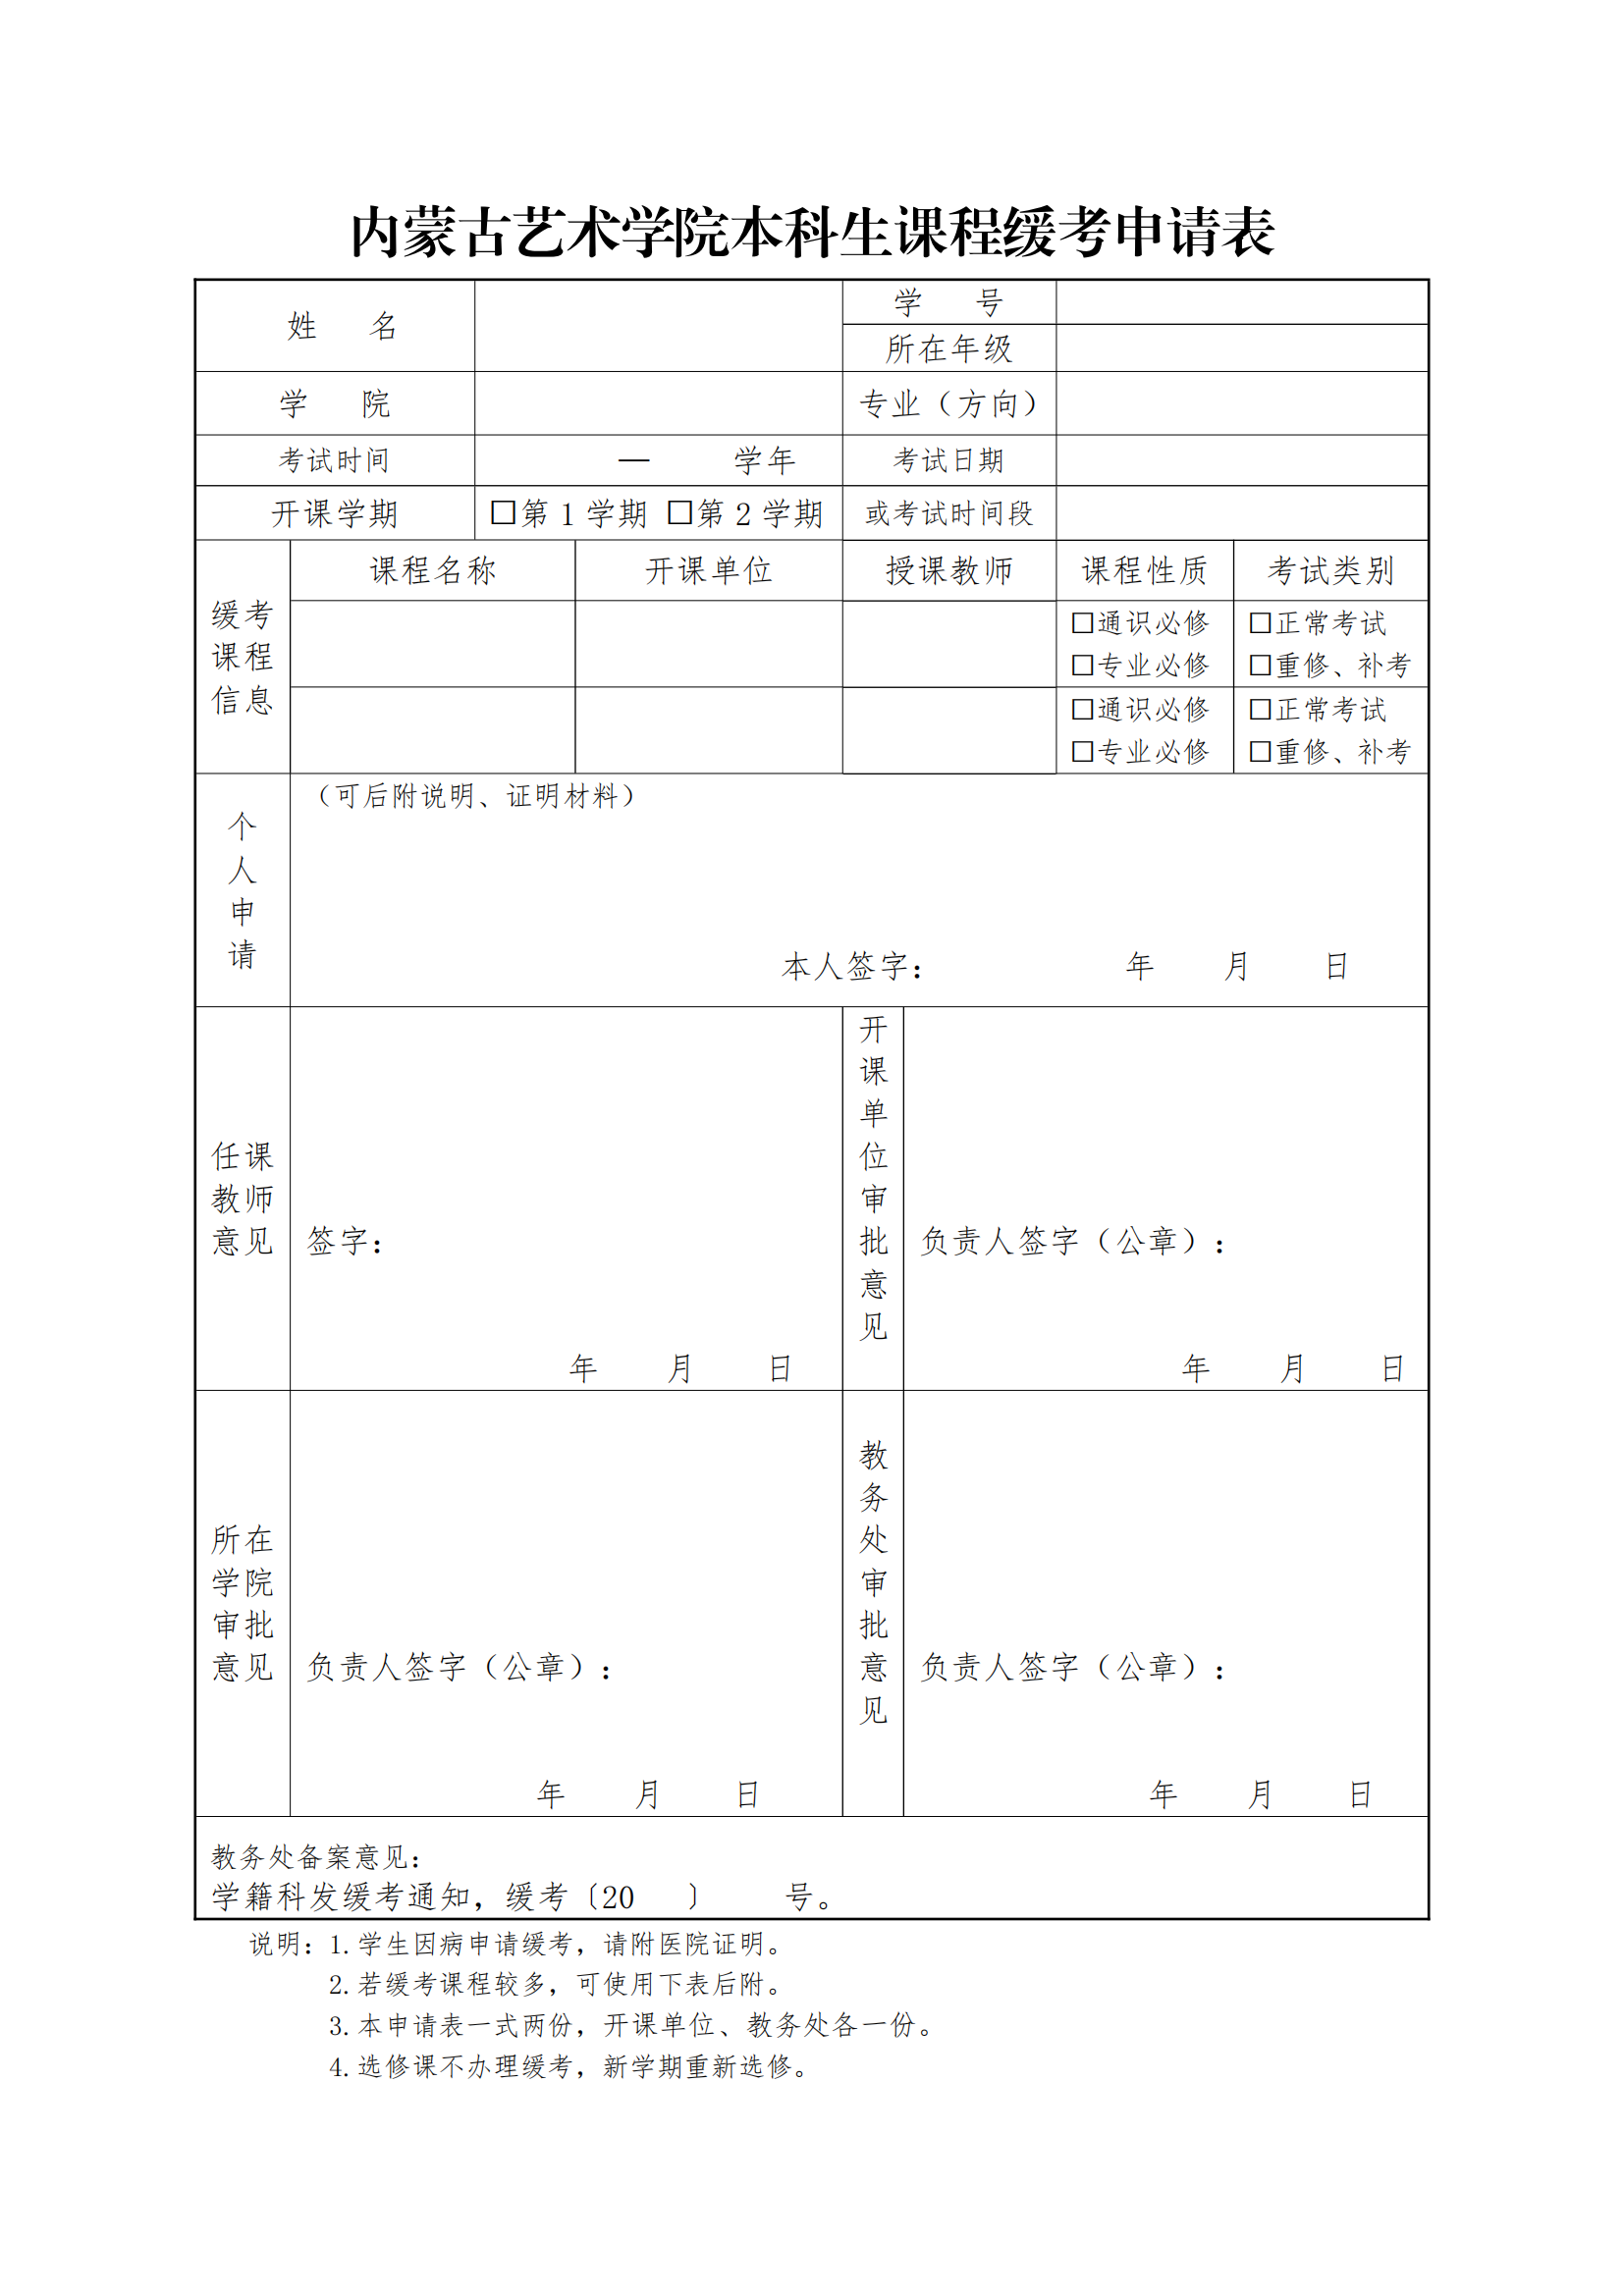 8.缓考工作流程与申请表_01.png